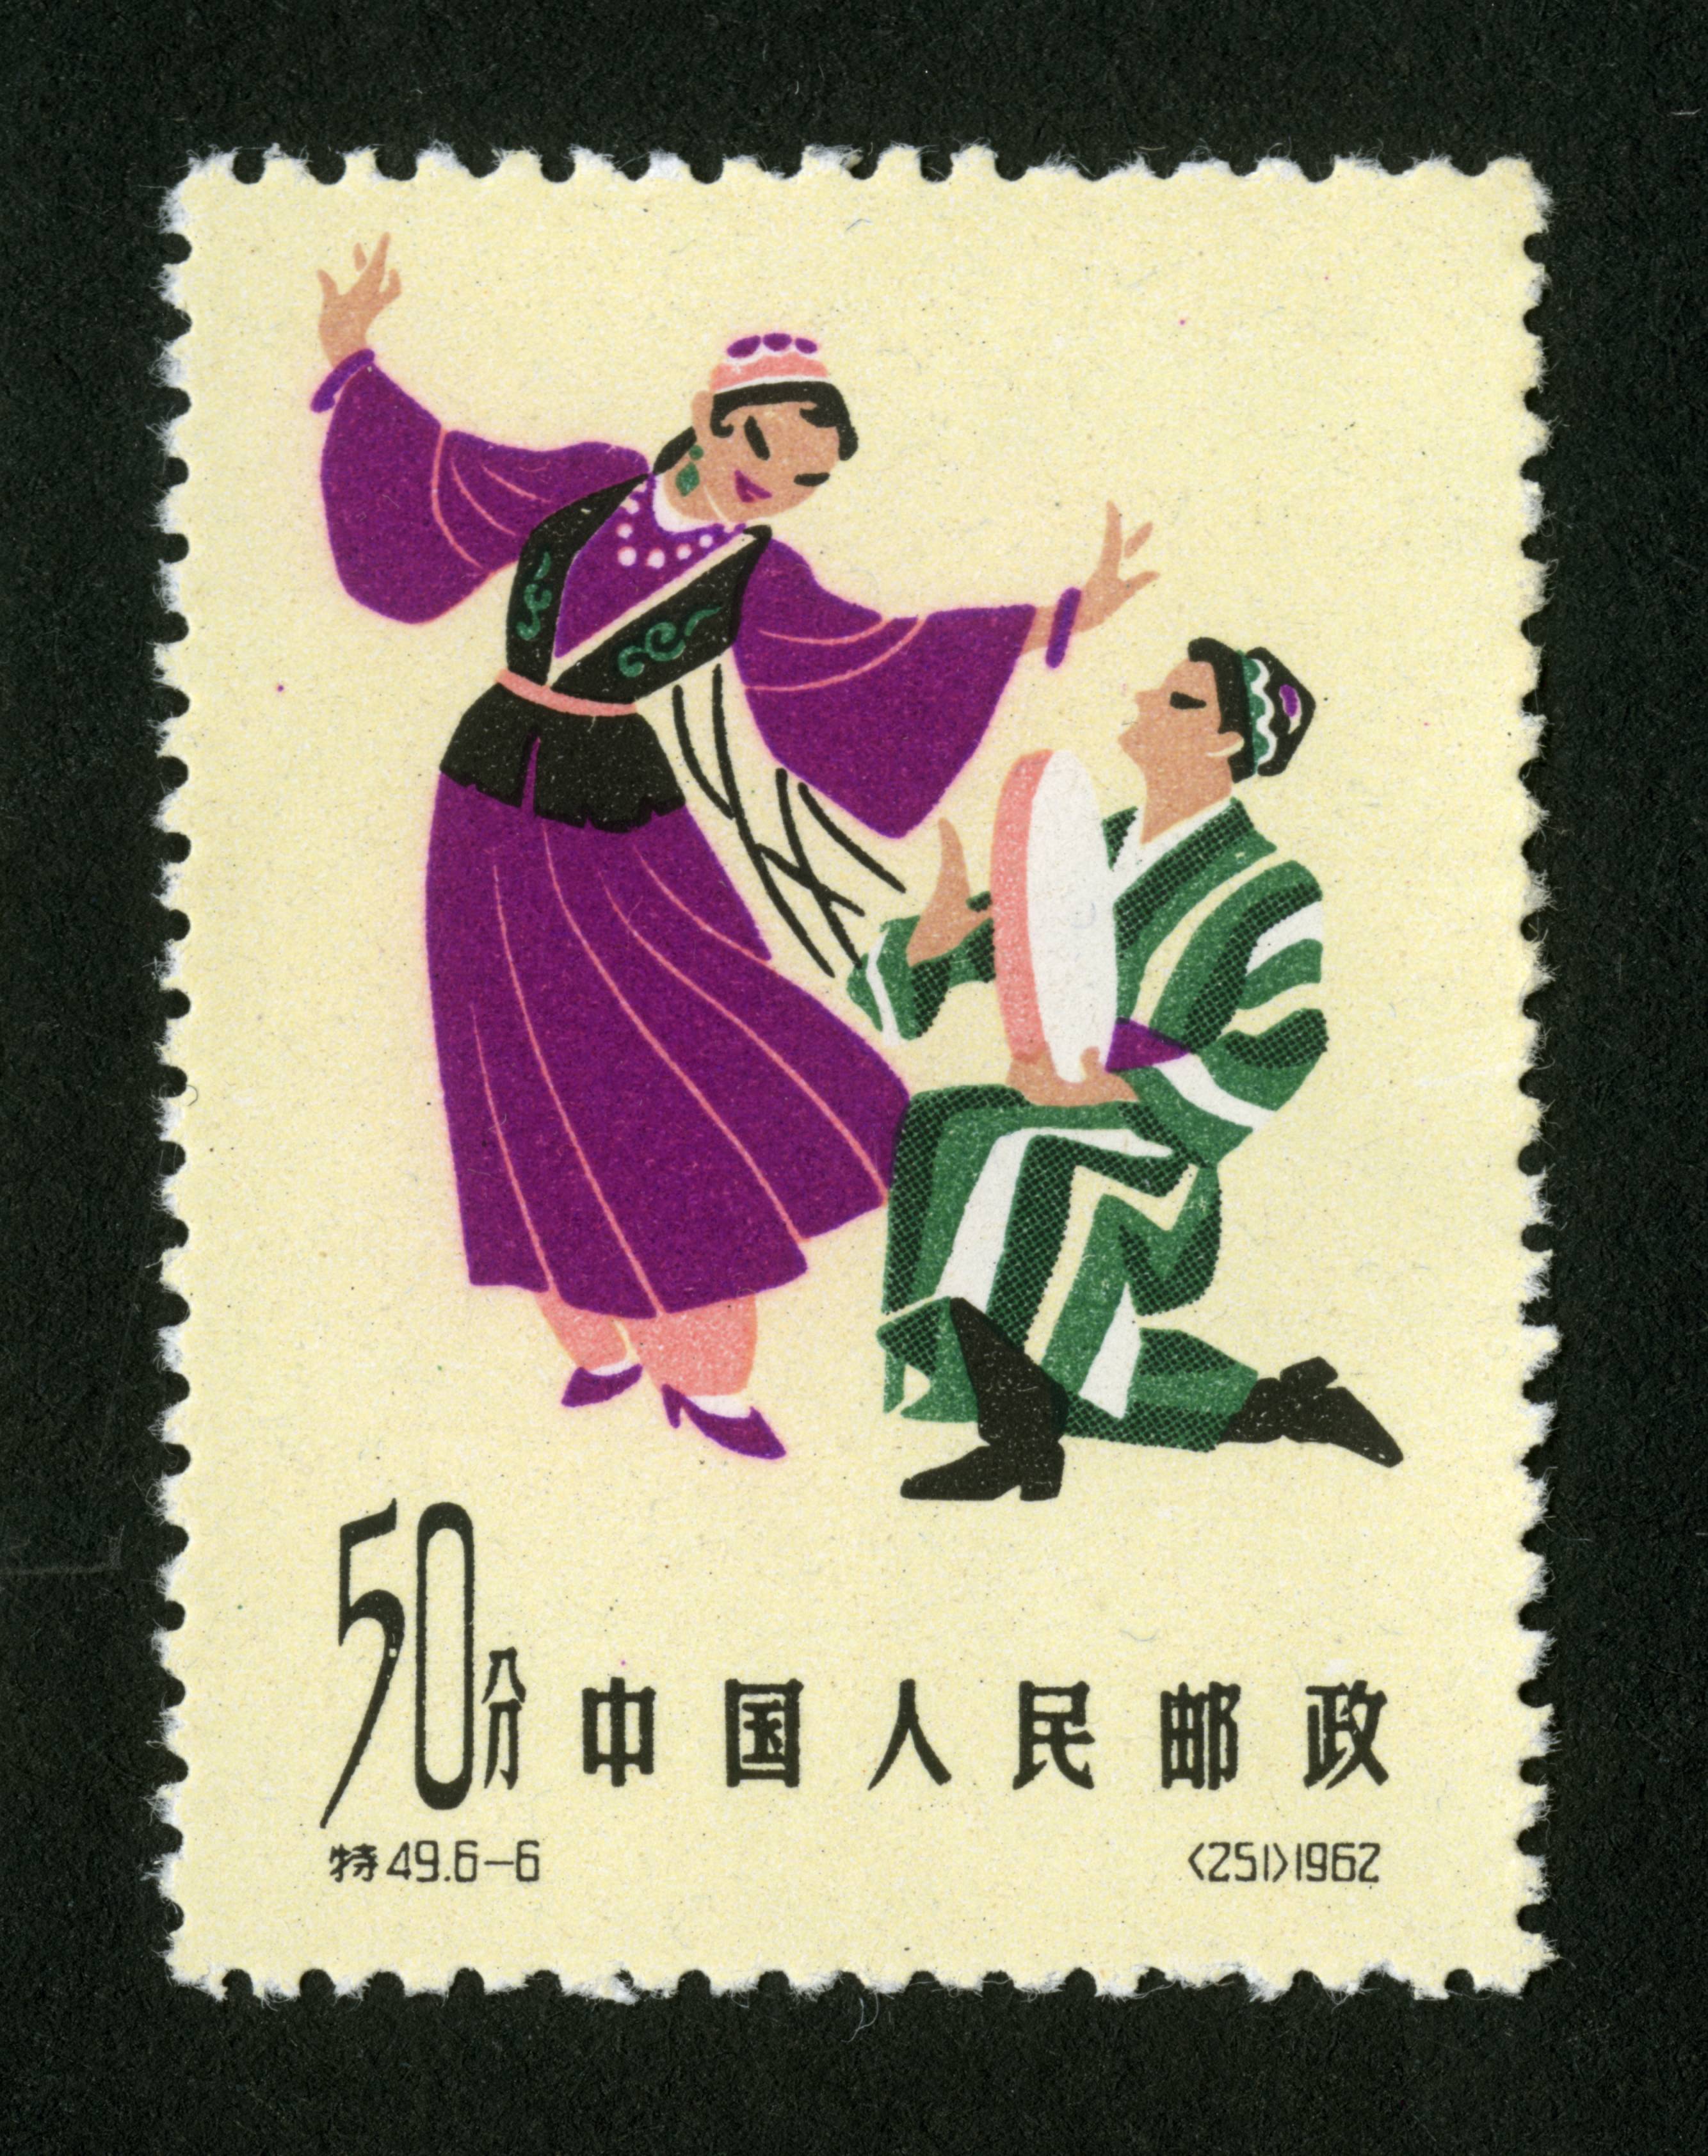 中国民间舞蹈(第一组)